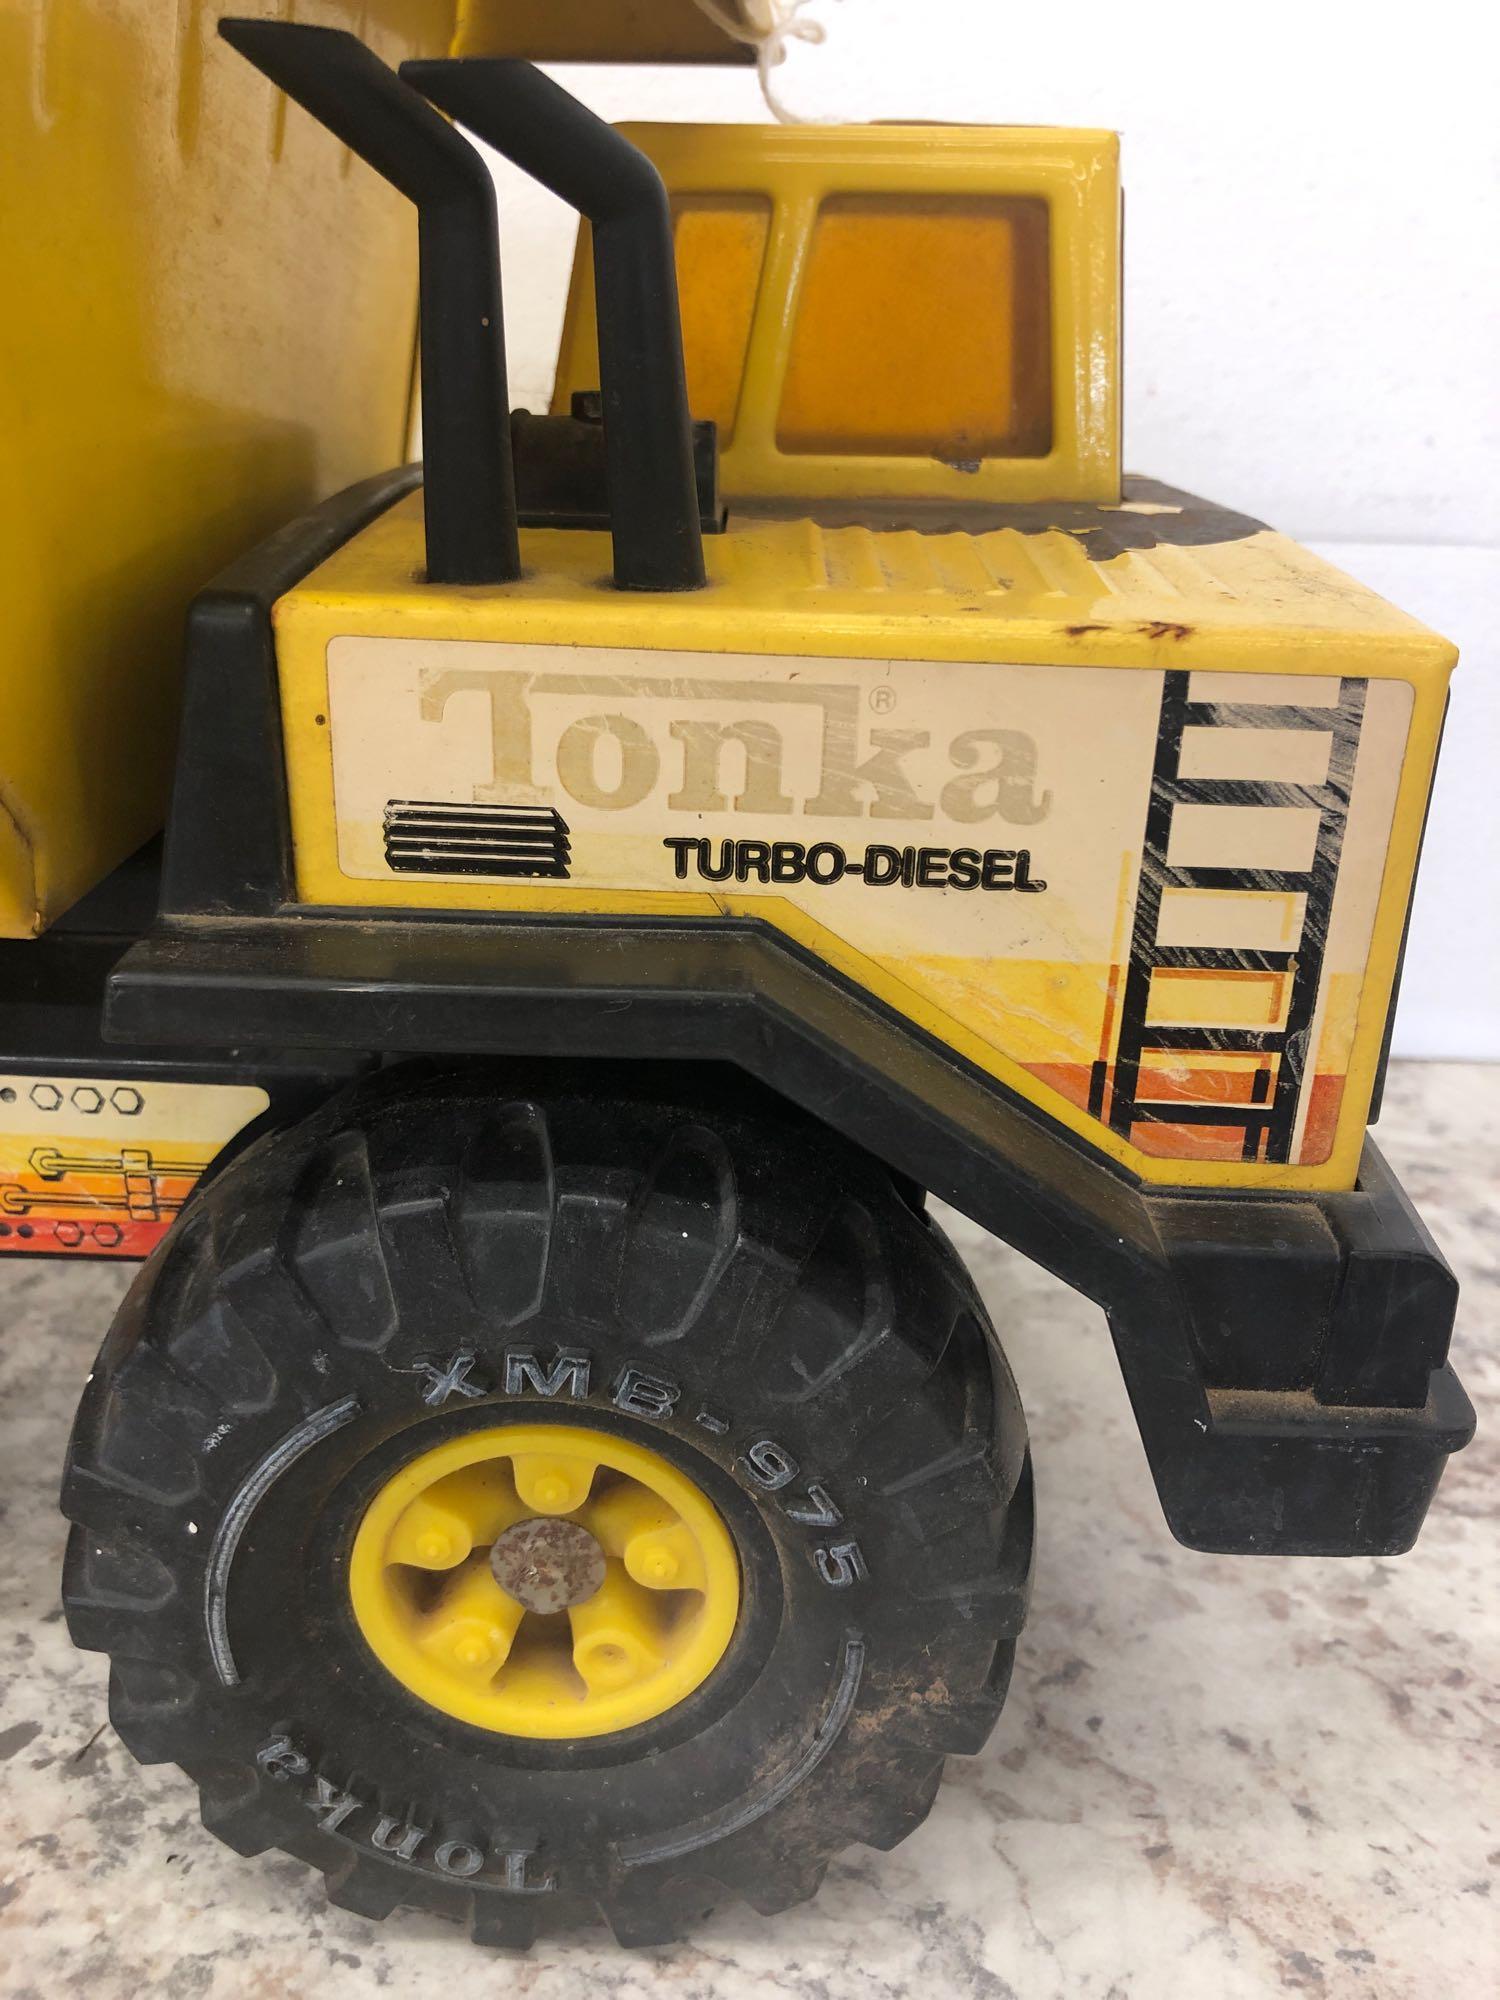 TONKA Turbo-Diesel Dump Truck